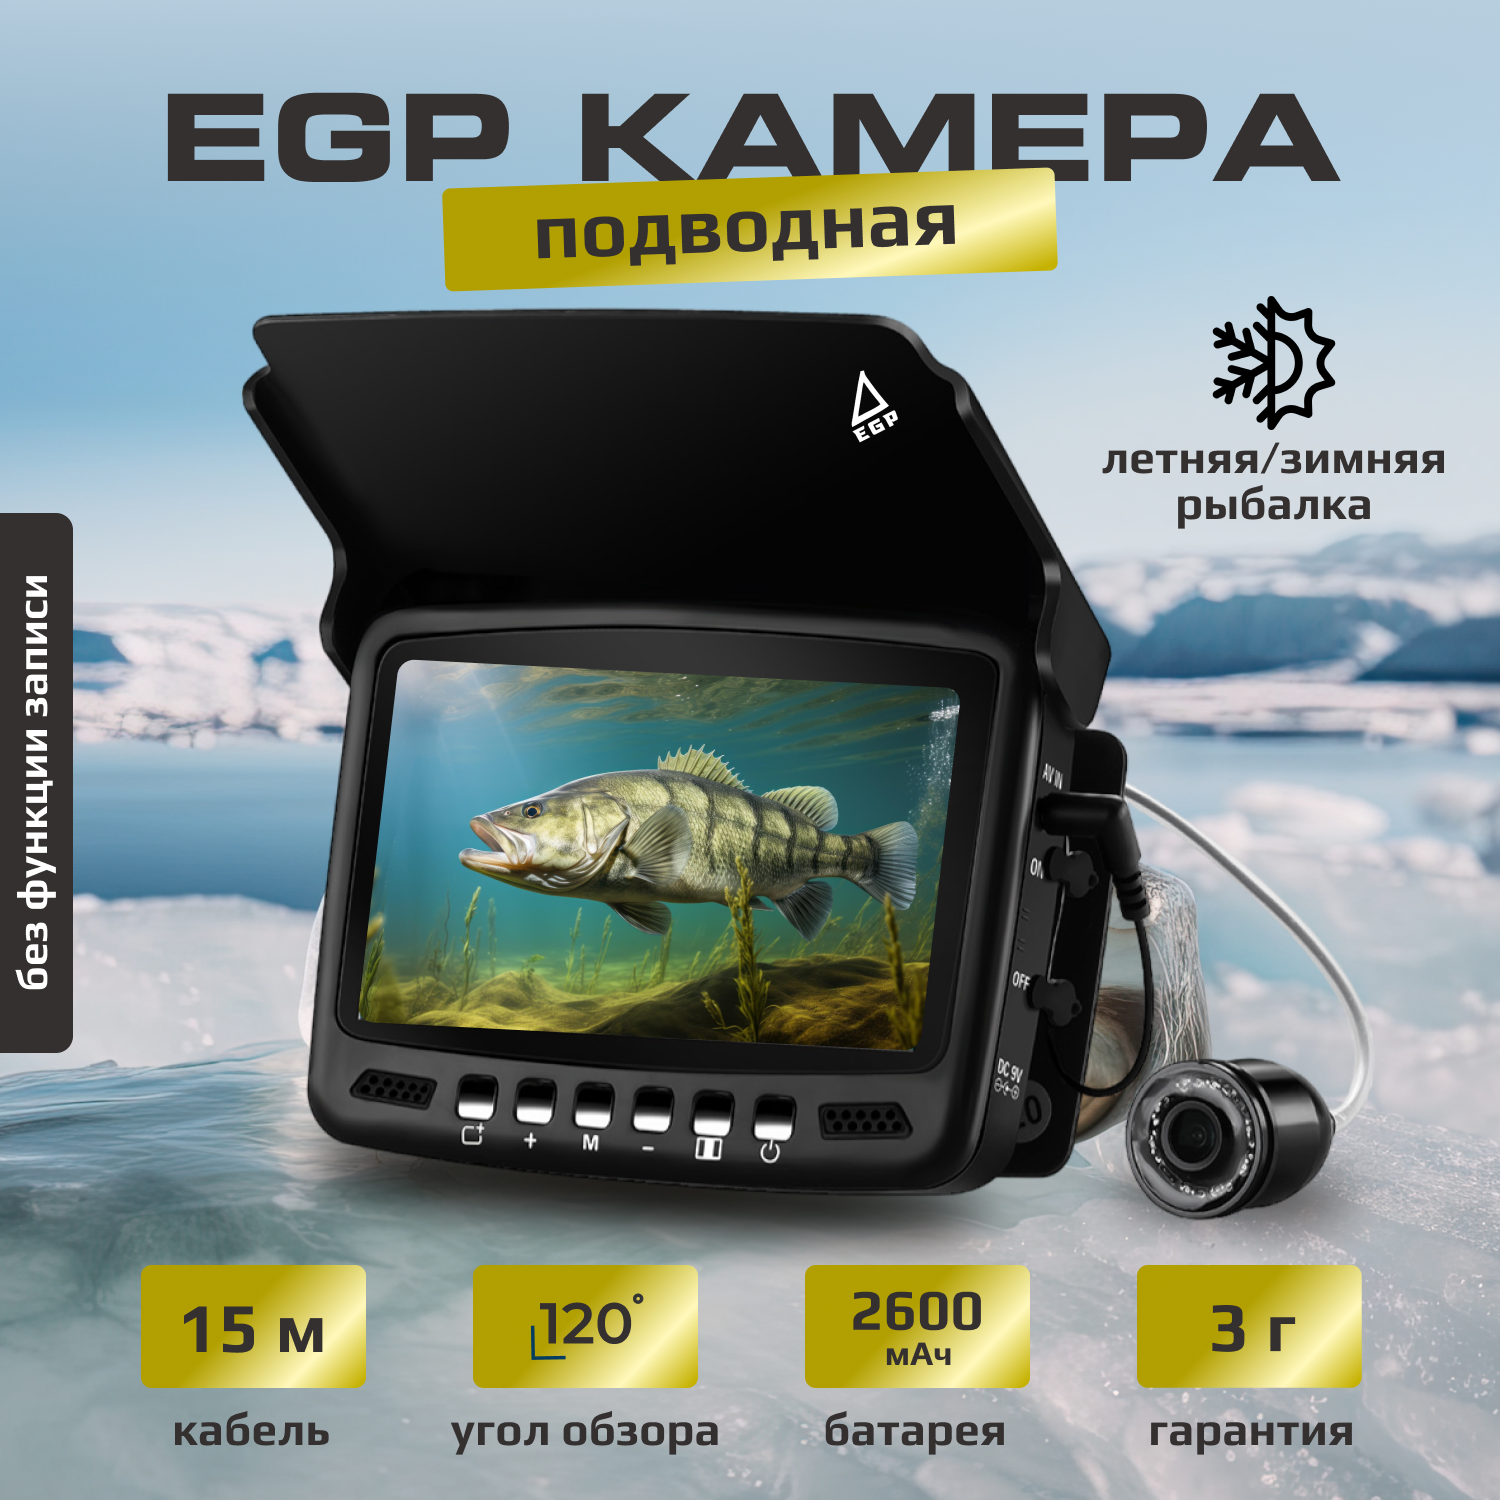 Видео удочка для летней рыбалки PROever Captain CAM 4.3" LCD / Подводная камера